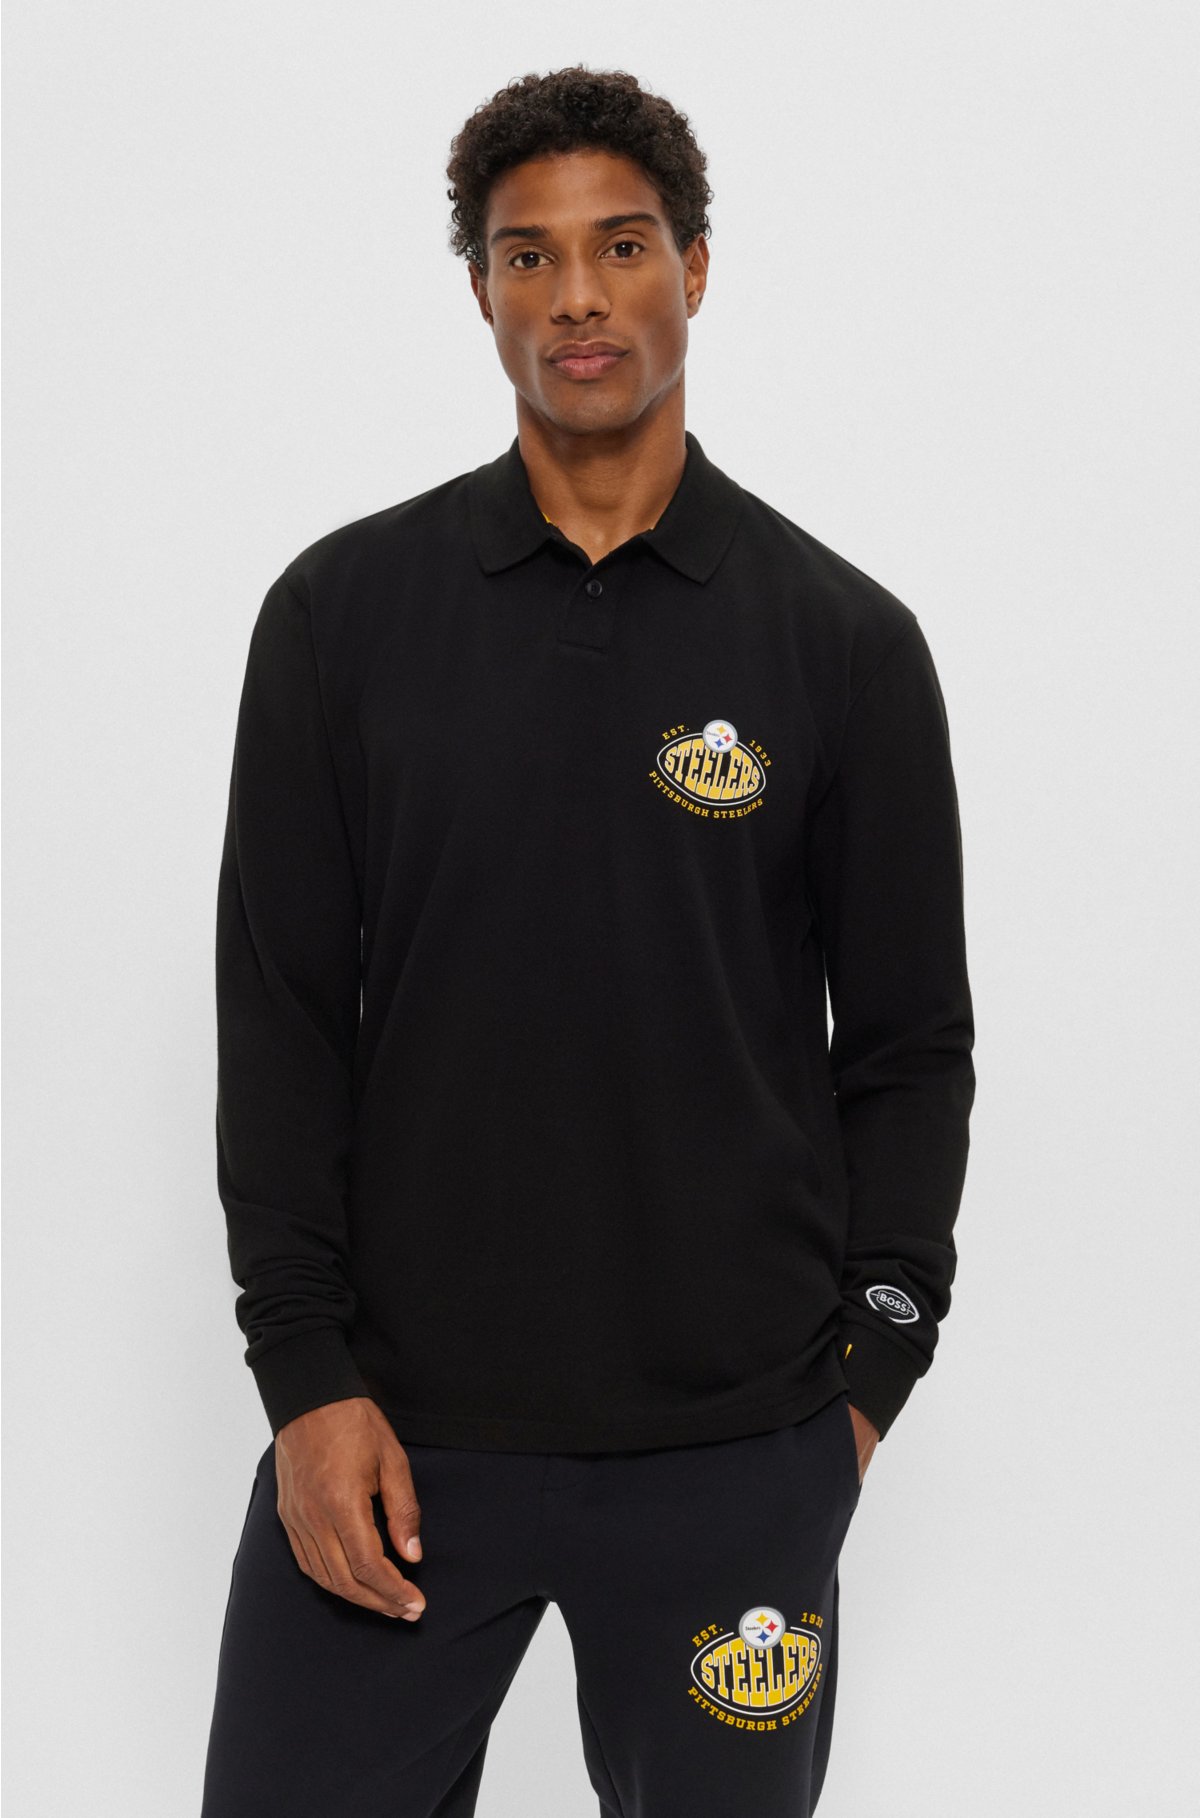 Golden State Warriors Mens Polos, Warriors Golf Shirt, Long Sleeve